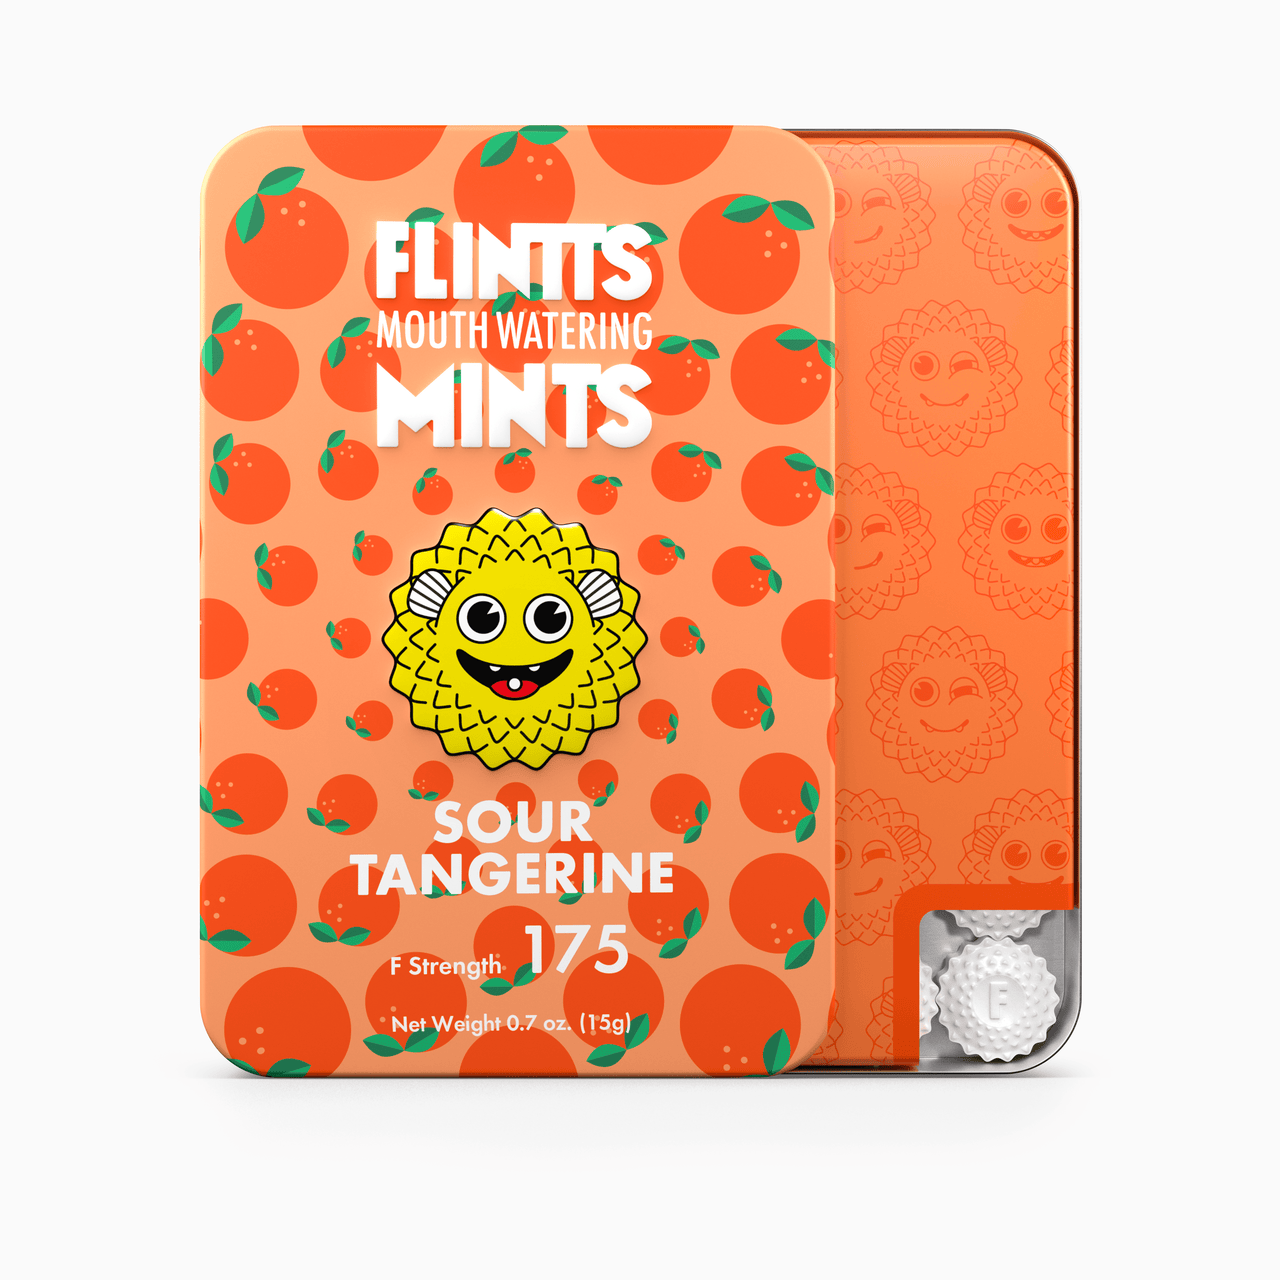 Flintts Mouthwatering Mints Sour Tangerine 3-Pack | Mints | 420 Science